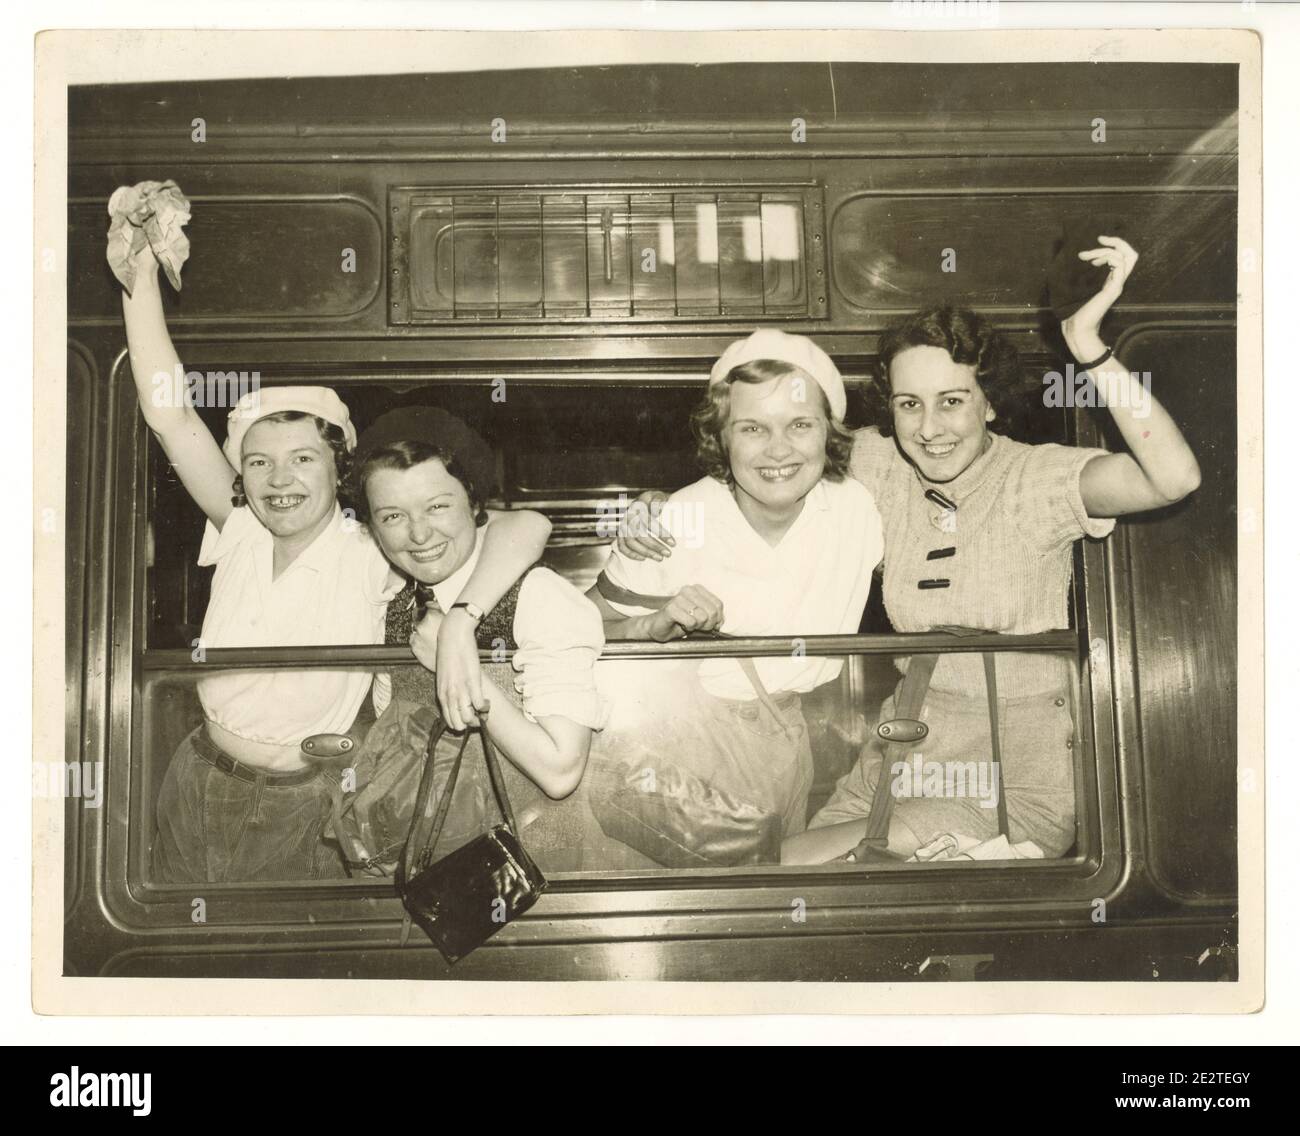 Photo de presse de l'époque de la Seconde Guerre mondiale de jeunes marchettes joyeuses à la gare, en agitant depuis une fenêtre de train à vapeur, Londres, Royaume-Uni, années 1940 Banque D'Images